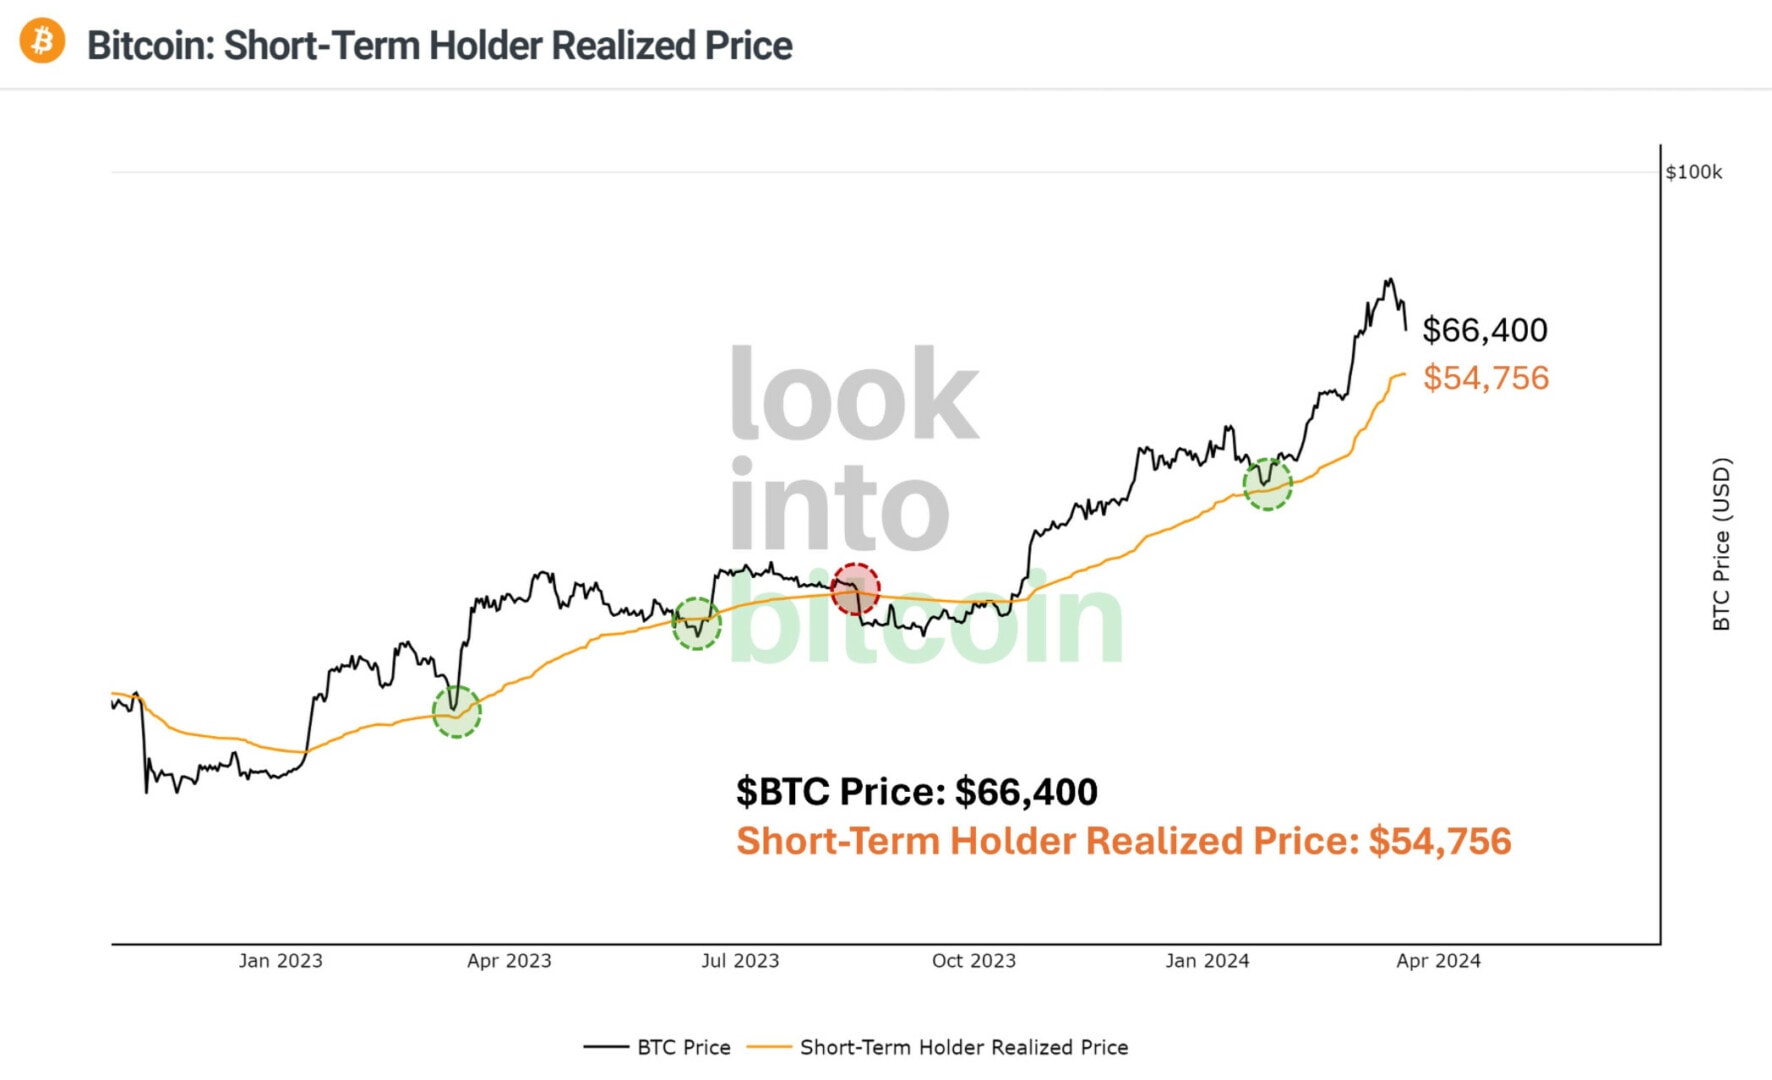 En cas de sévère chute, le cours du Bitcoin pourrait réagir sur le prix réalisé des détenteurs à court terme à 55 000 $ - 23 mars 2024. 